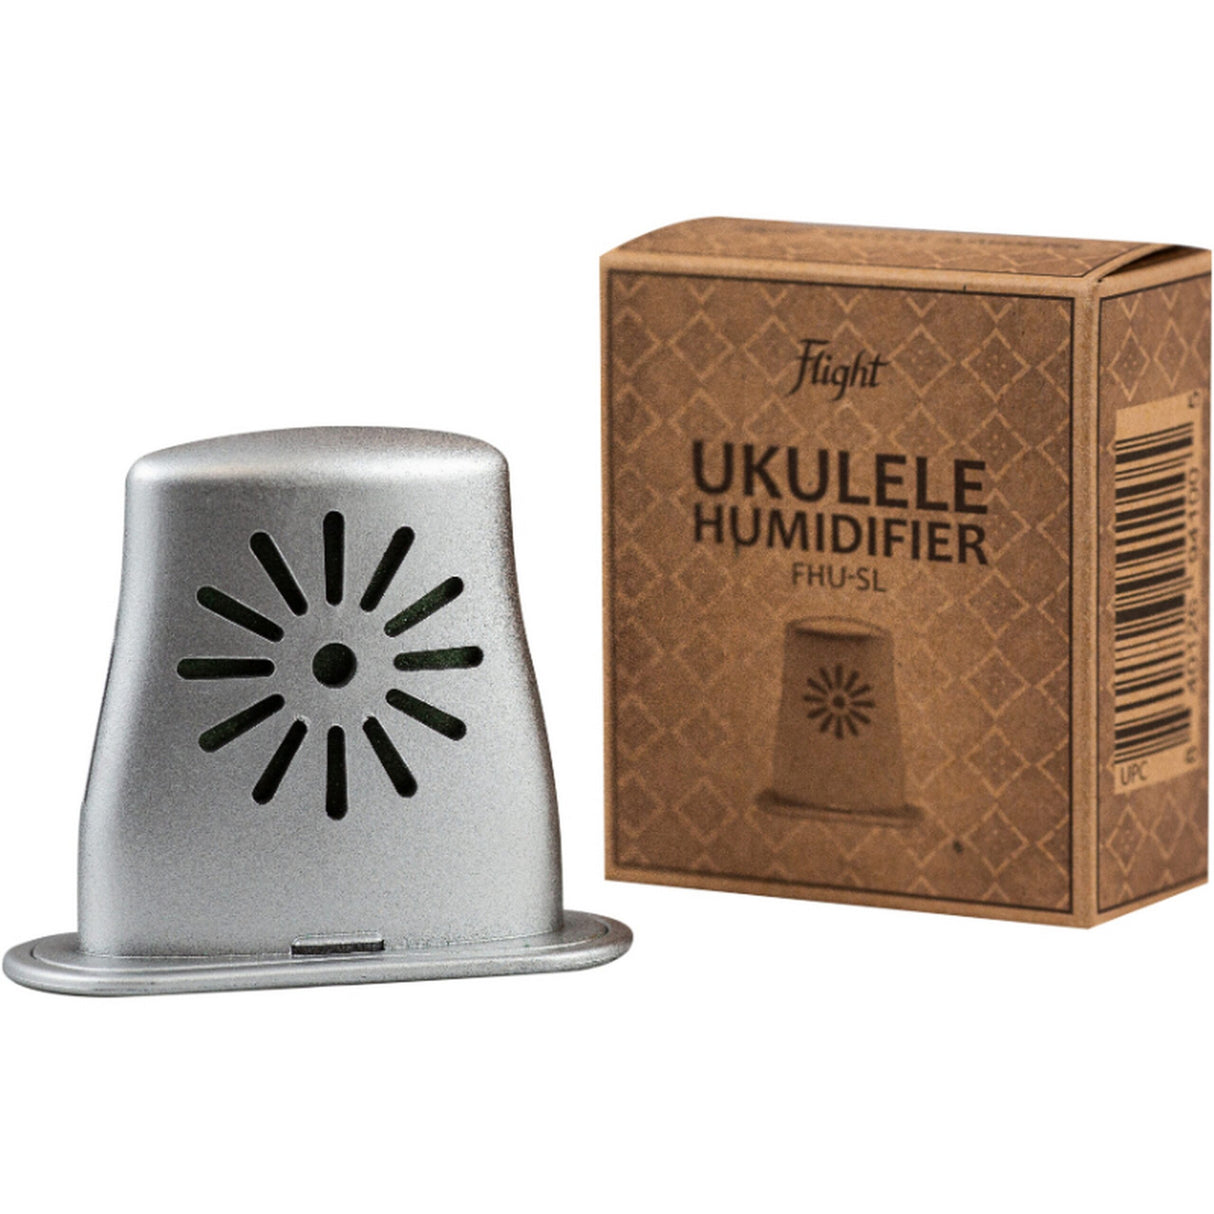 Flight Ukuleles FHU-SL Ukulele Humidifier, Silver